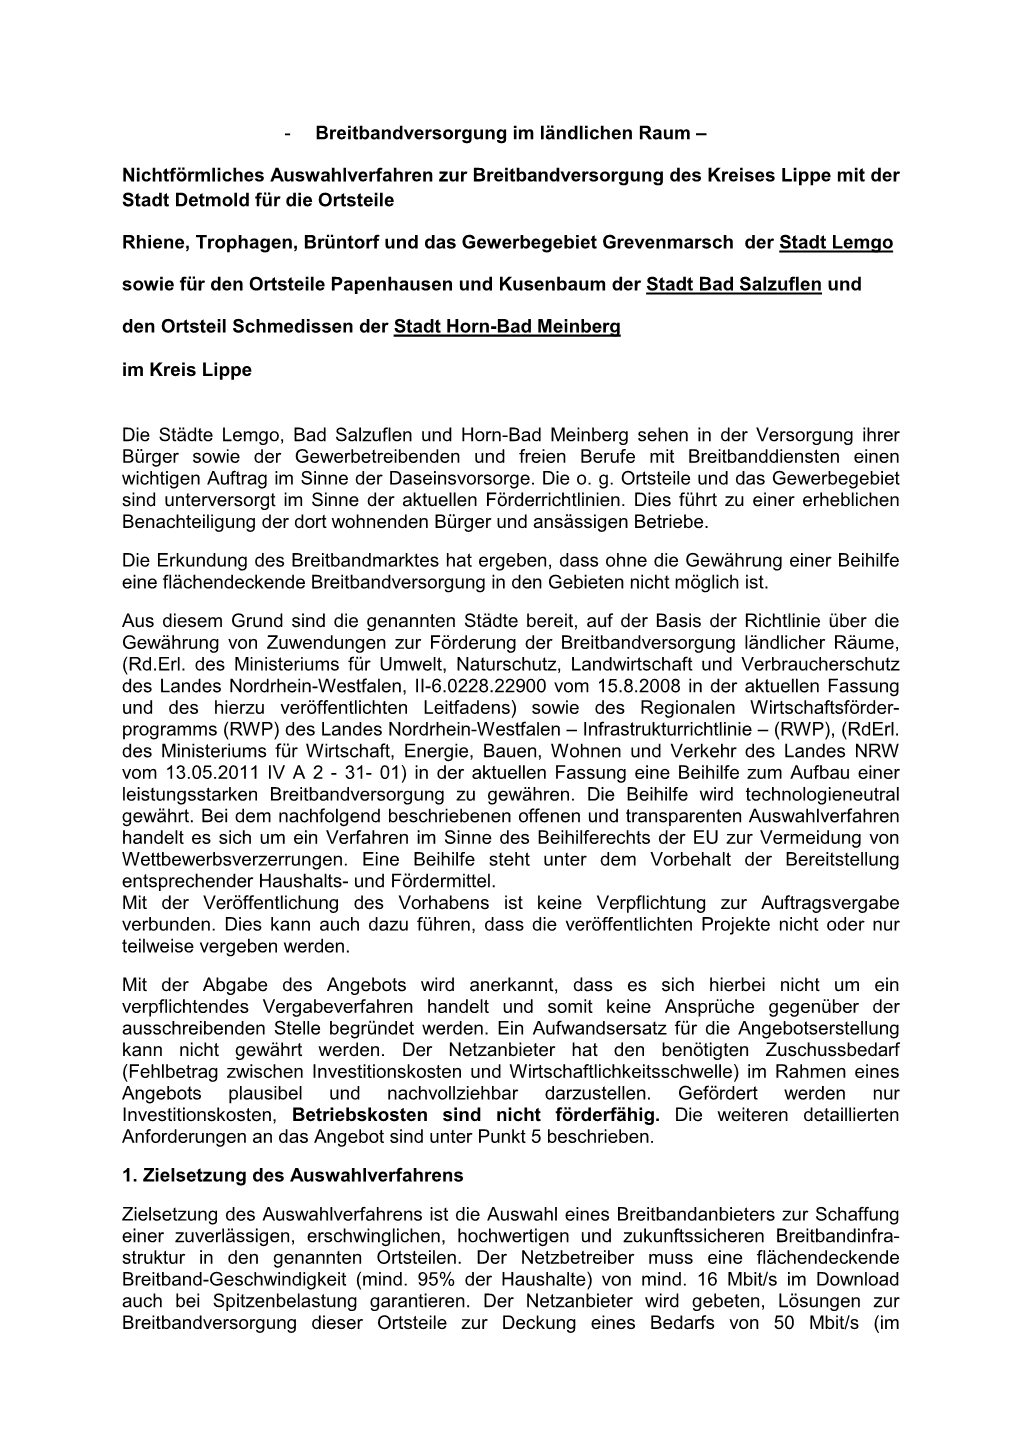 Text Auswahlverfahren Lemgo, Bad Salzuflen, Horn-Bad Meinberg